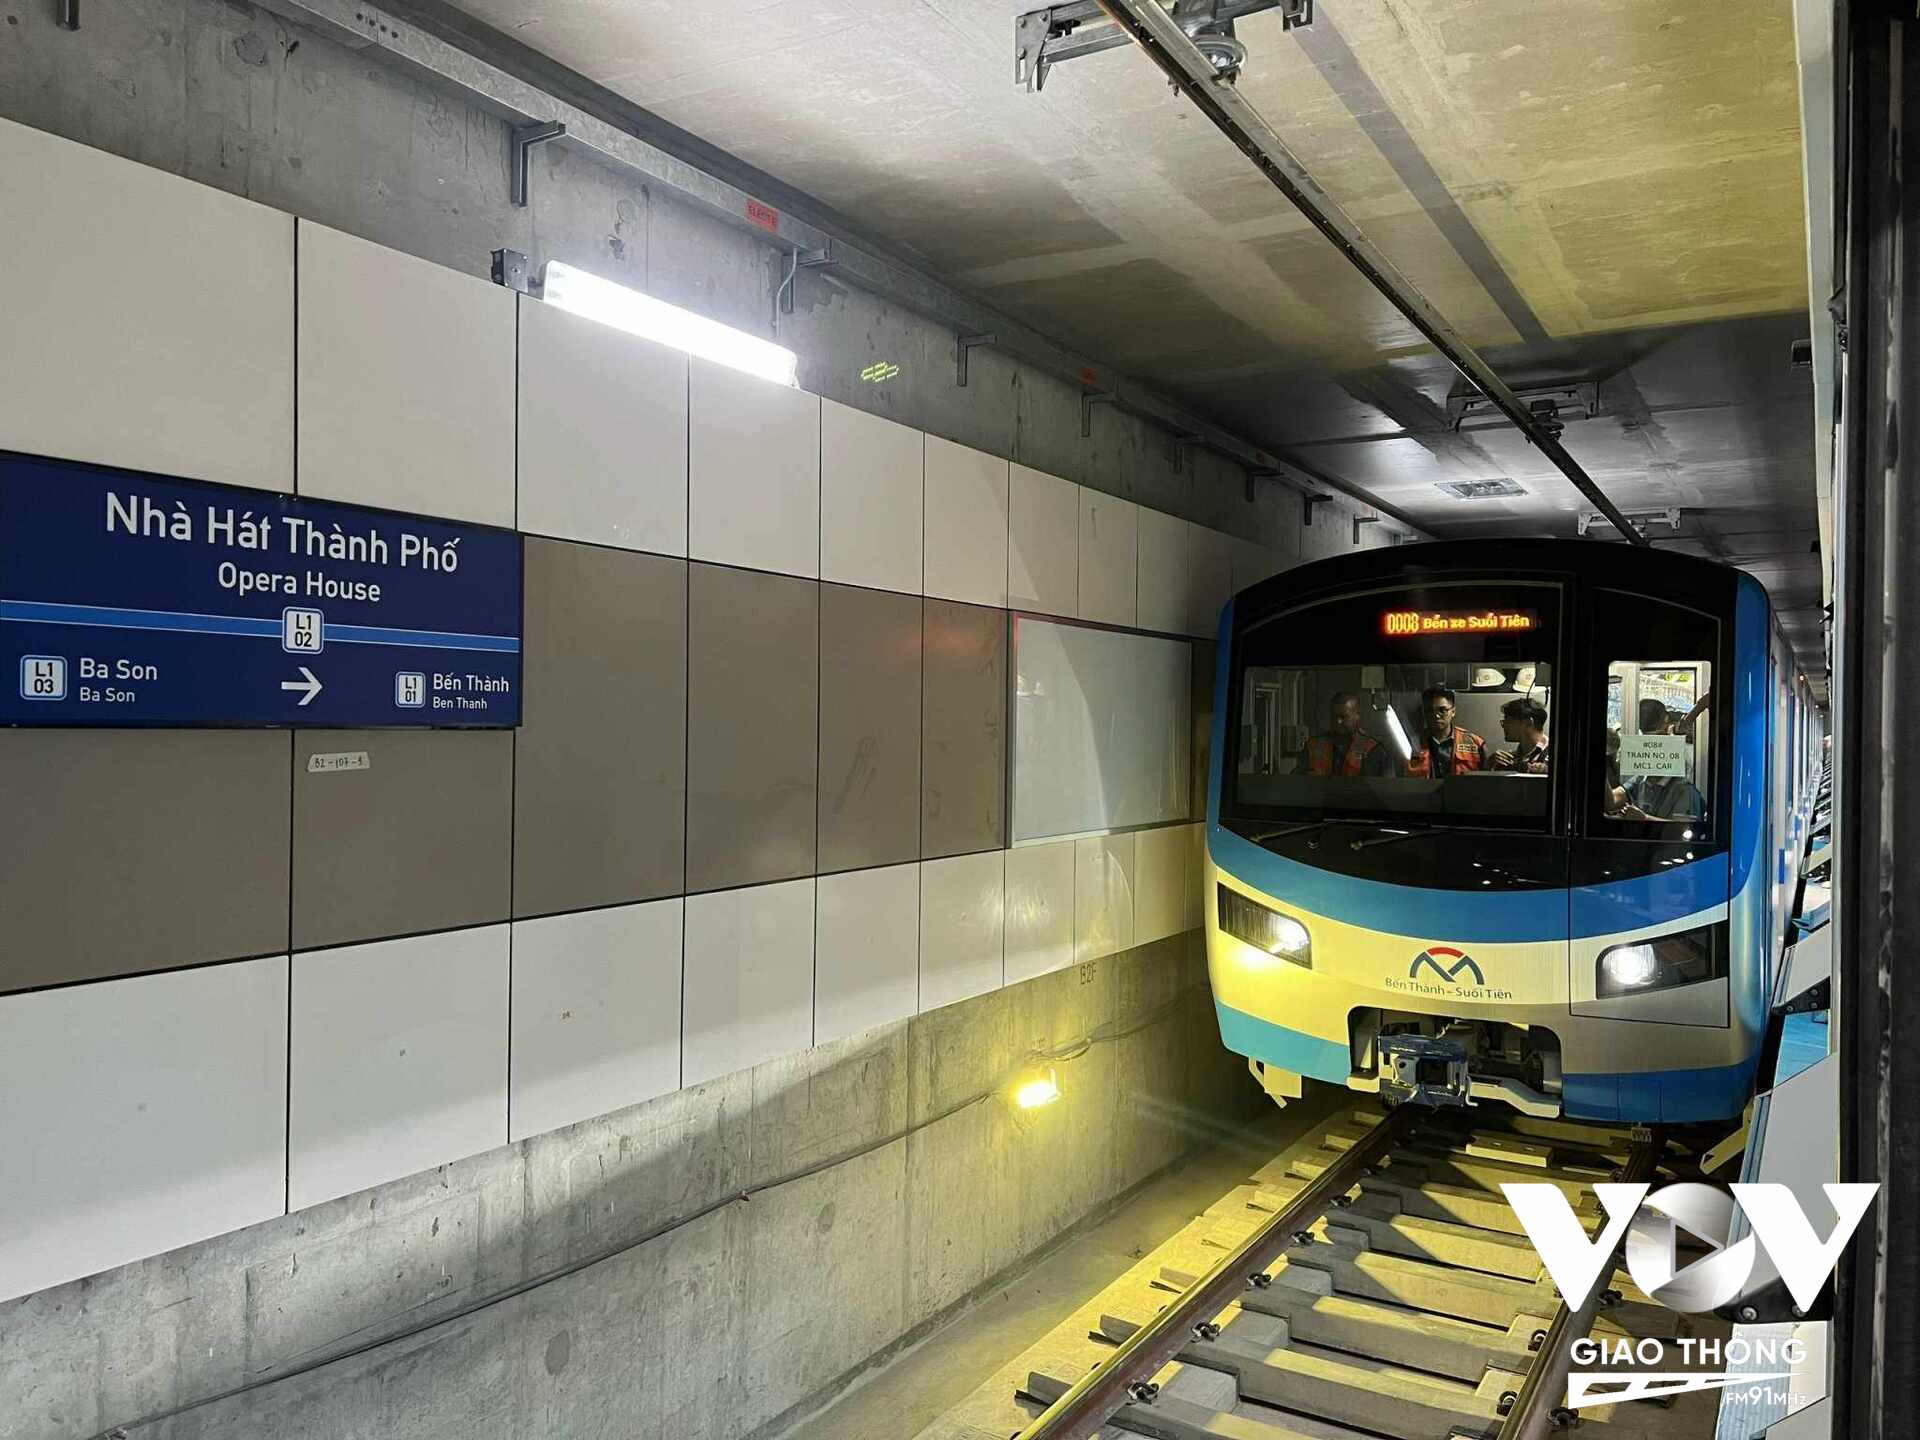 Tuyến Metro số 1 (Bến Thành - Suối Tiên) bắt đầu chạy thử nghiệm trên toàn tuyến, bao gồm cả đoạn trên cao và đoạn đi ngầm, từ ga Bến xe Suối Tiên đến ga trung tâm Bến Thành.